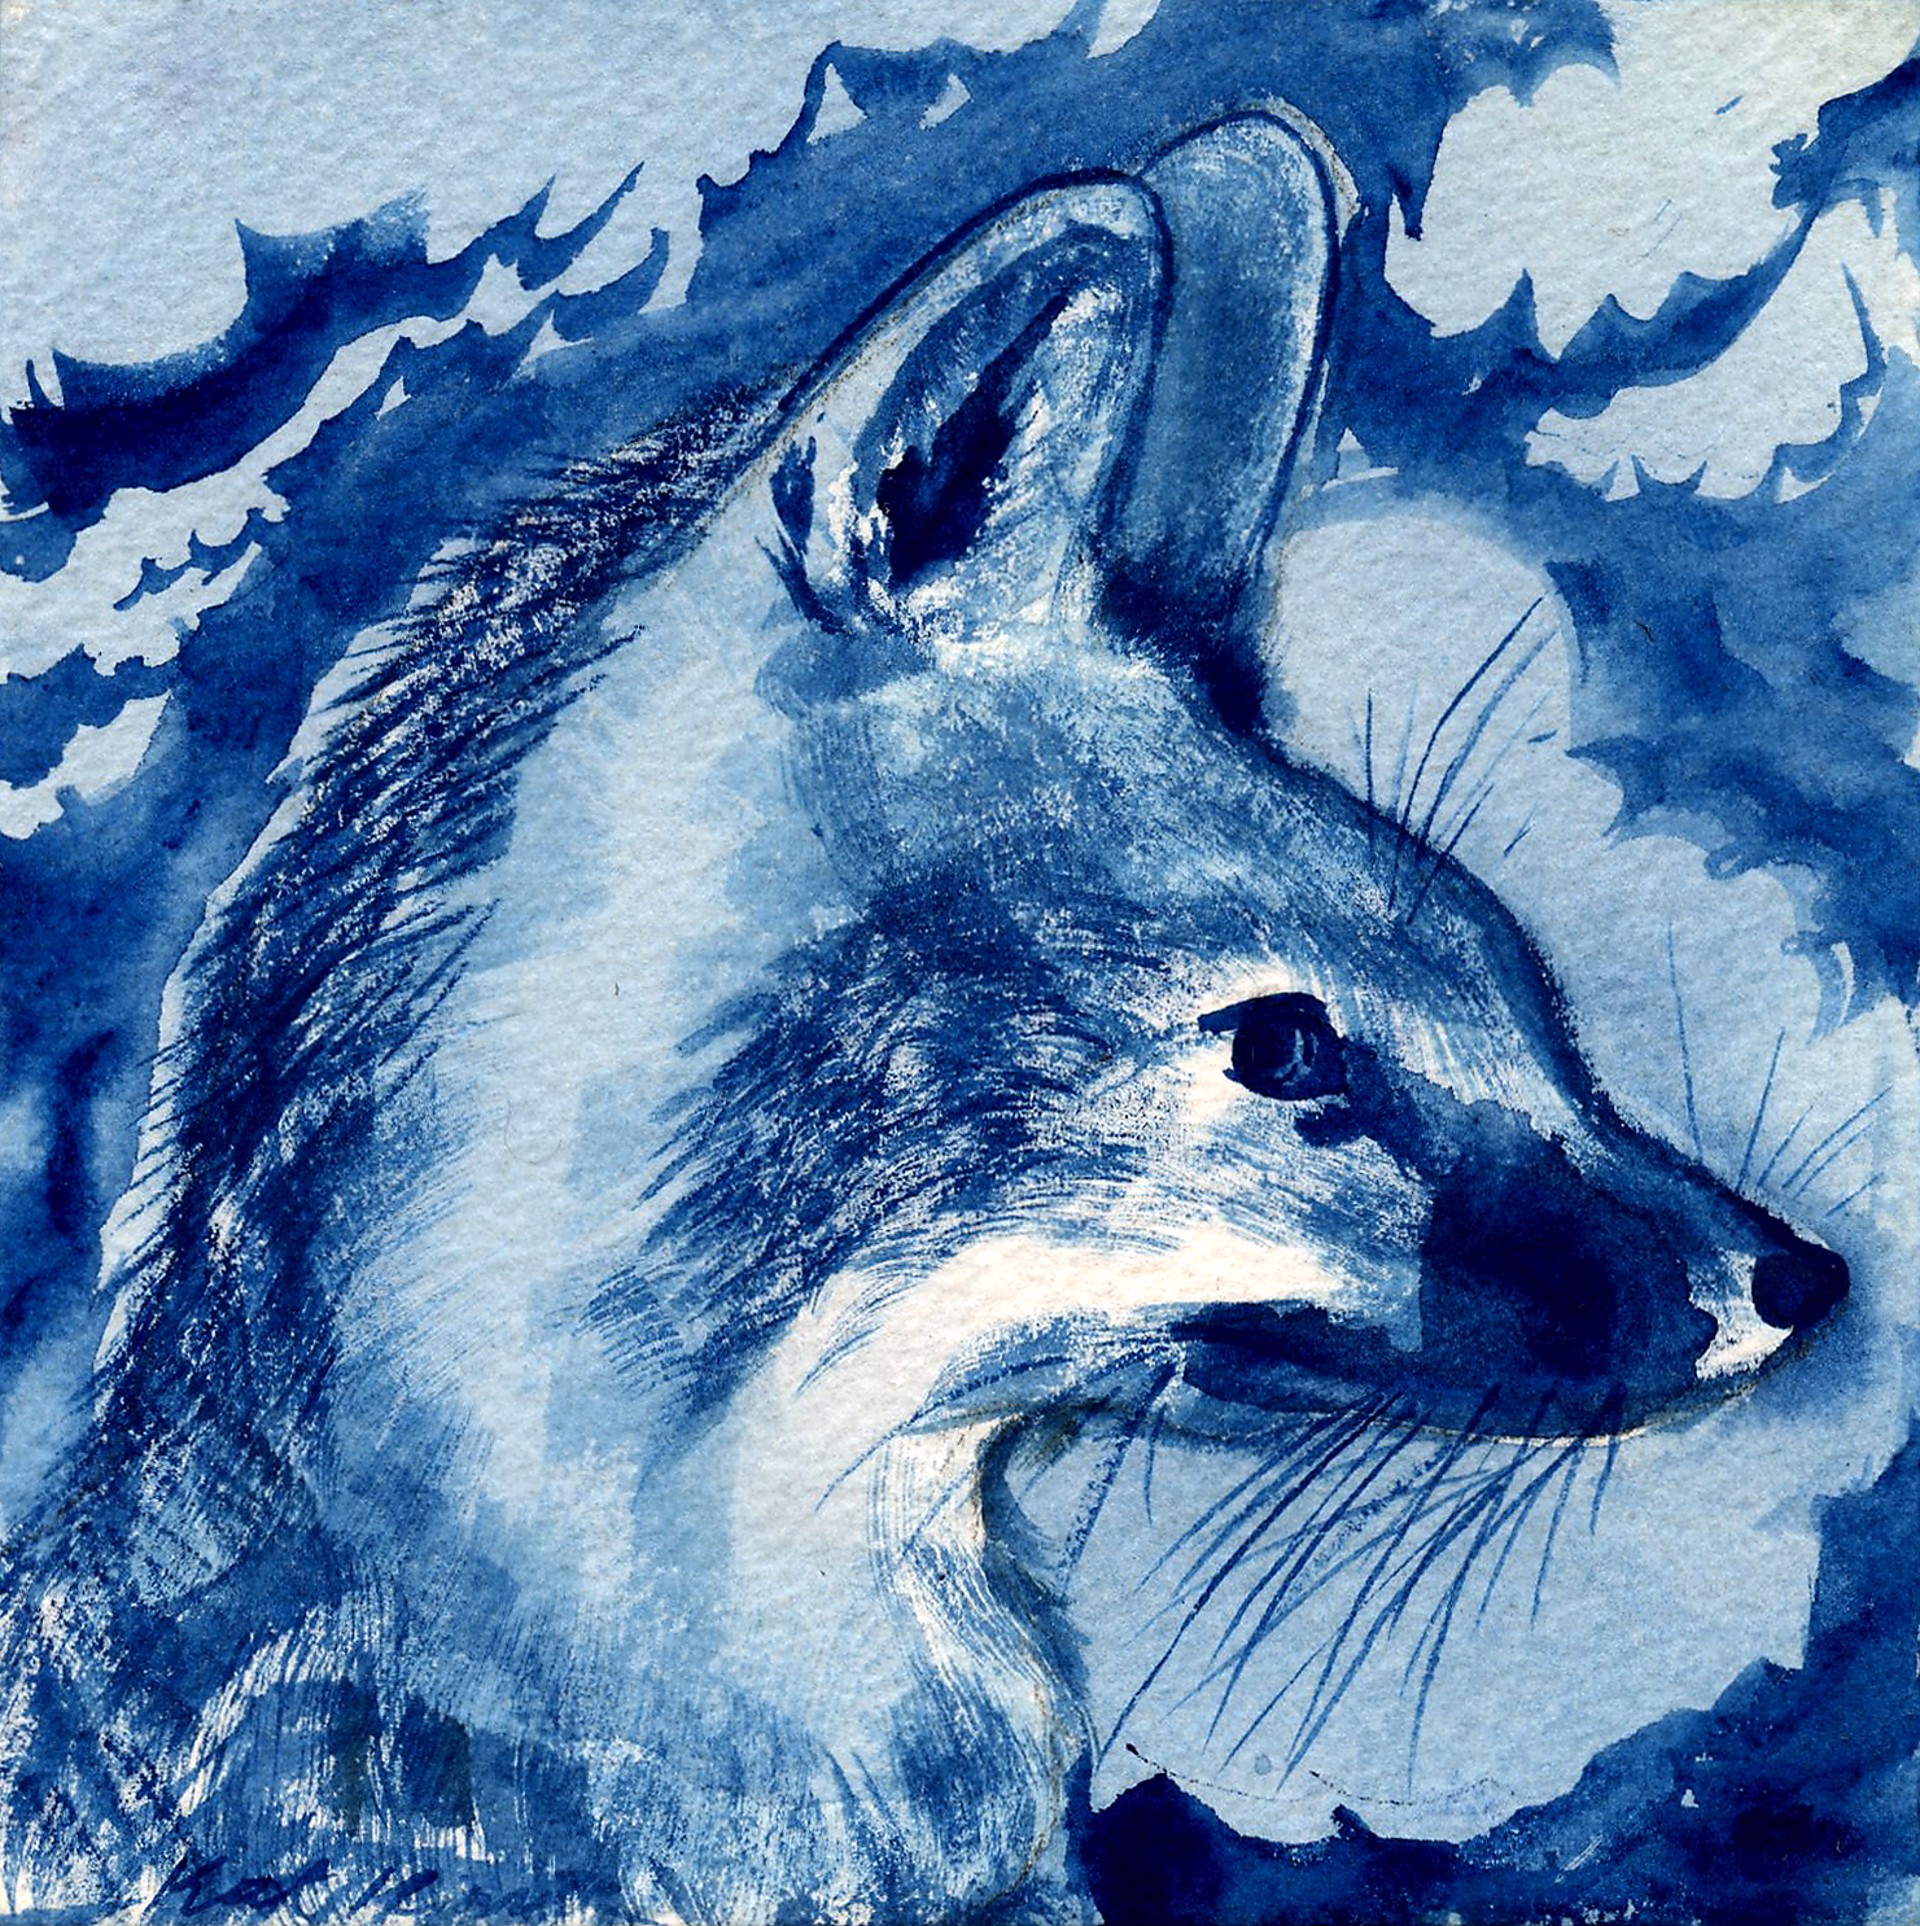 Grey Fox in Blue by Kat Kinnick